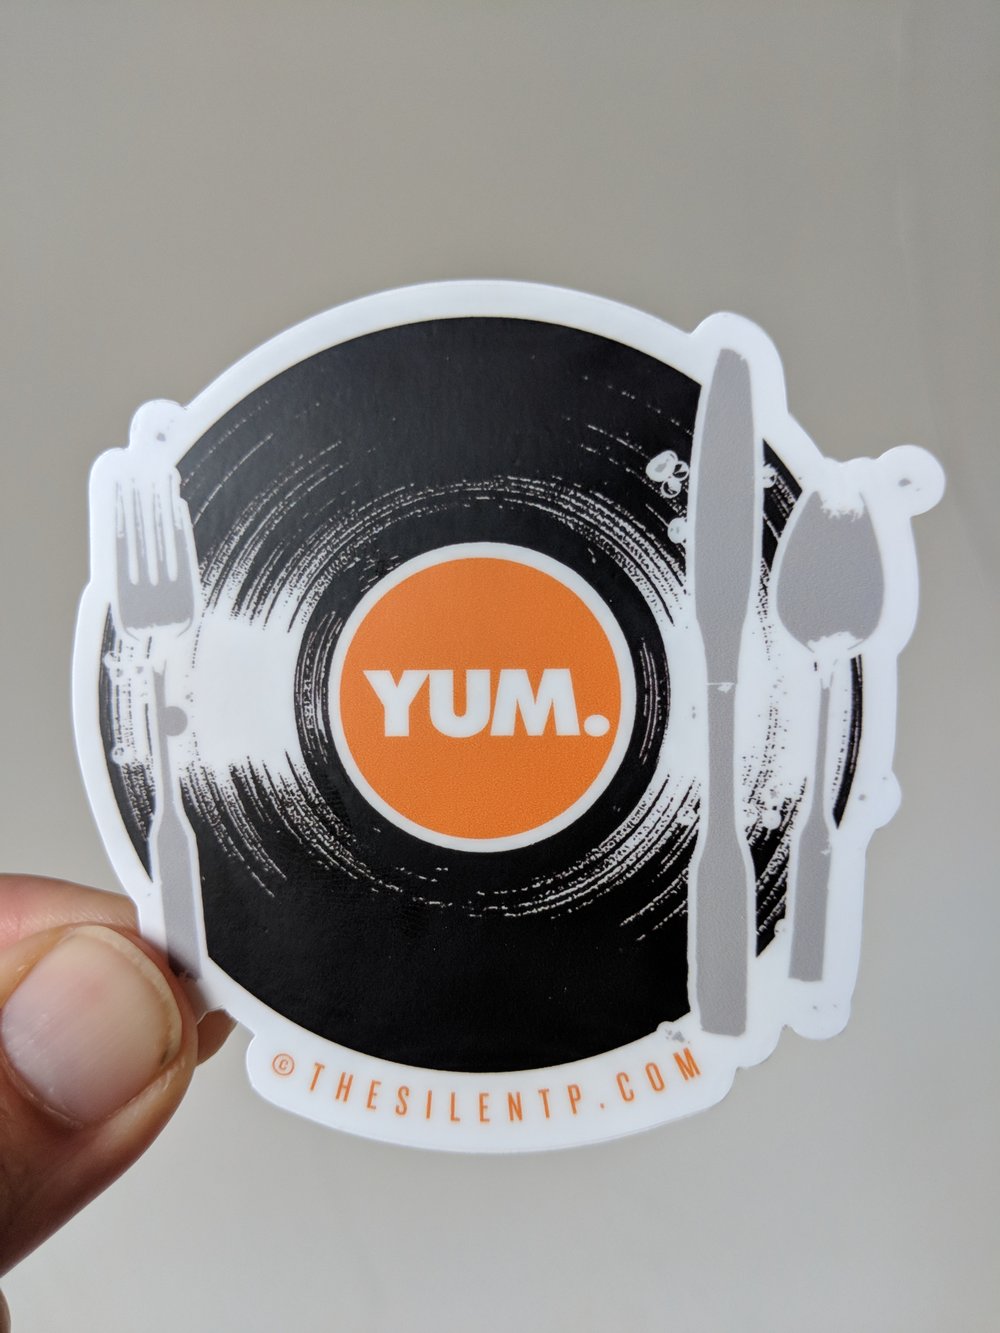 YUM. Vinyl Die cut sticker